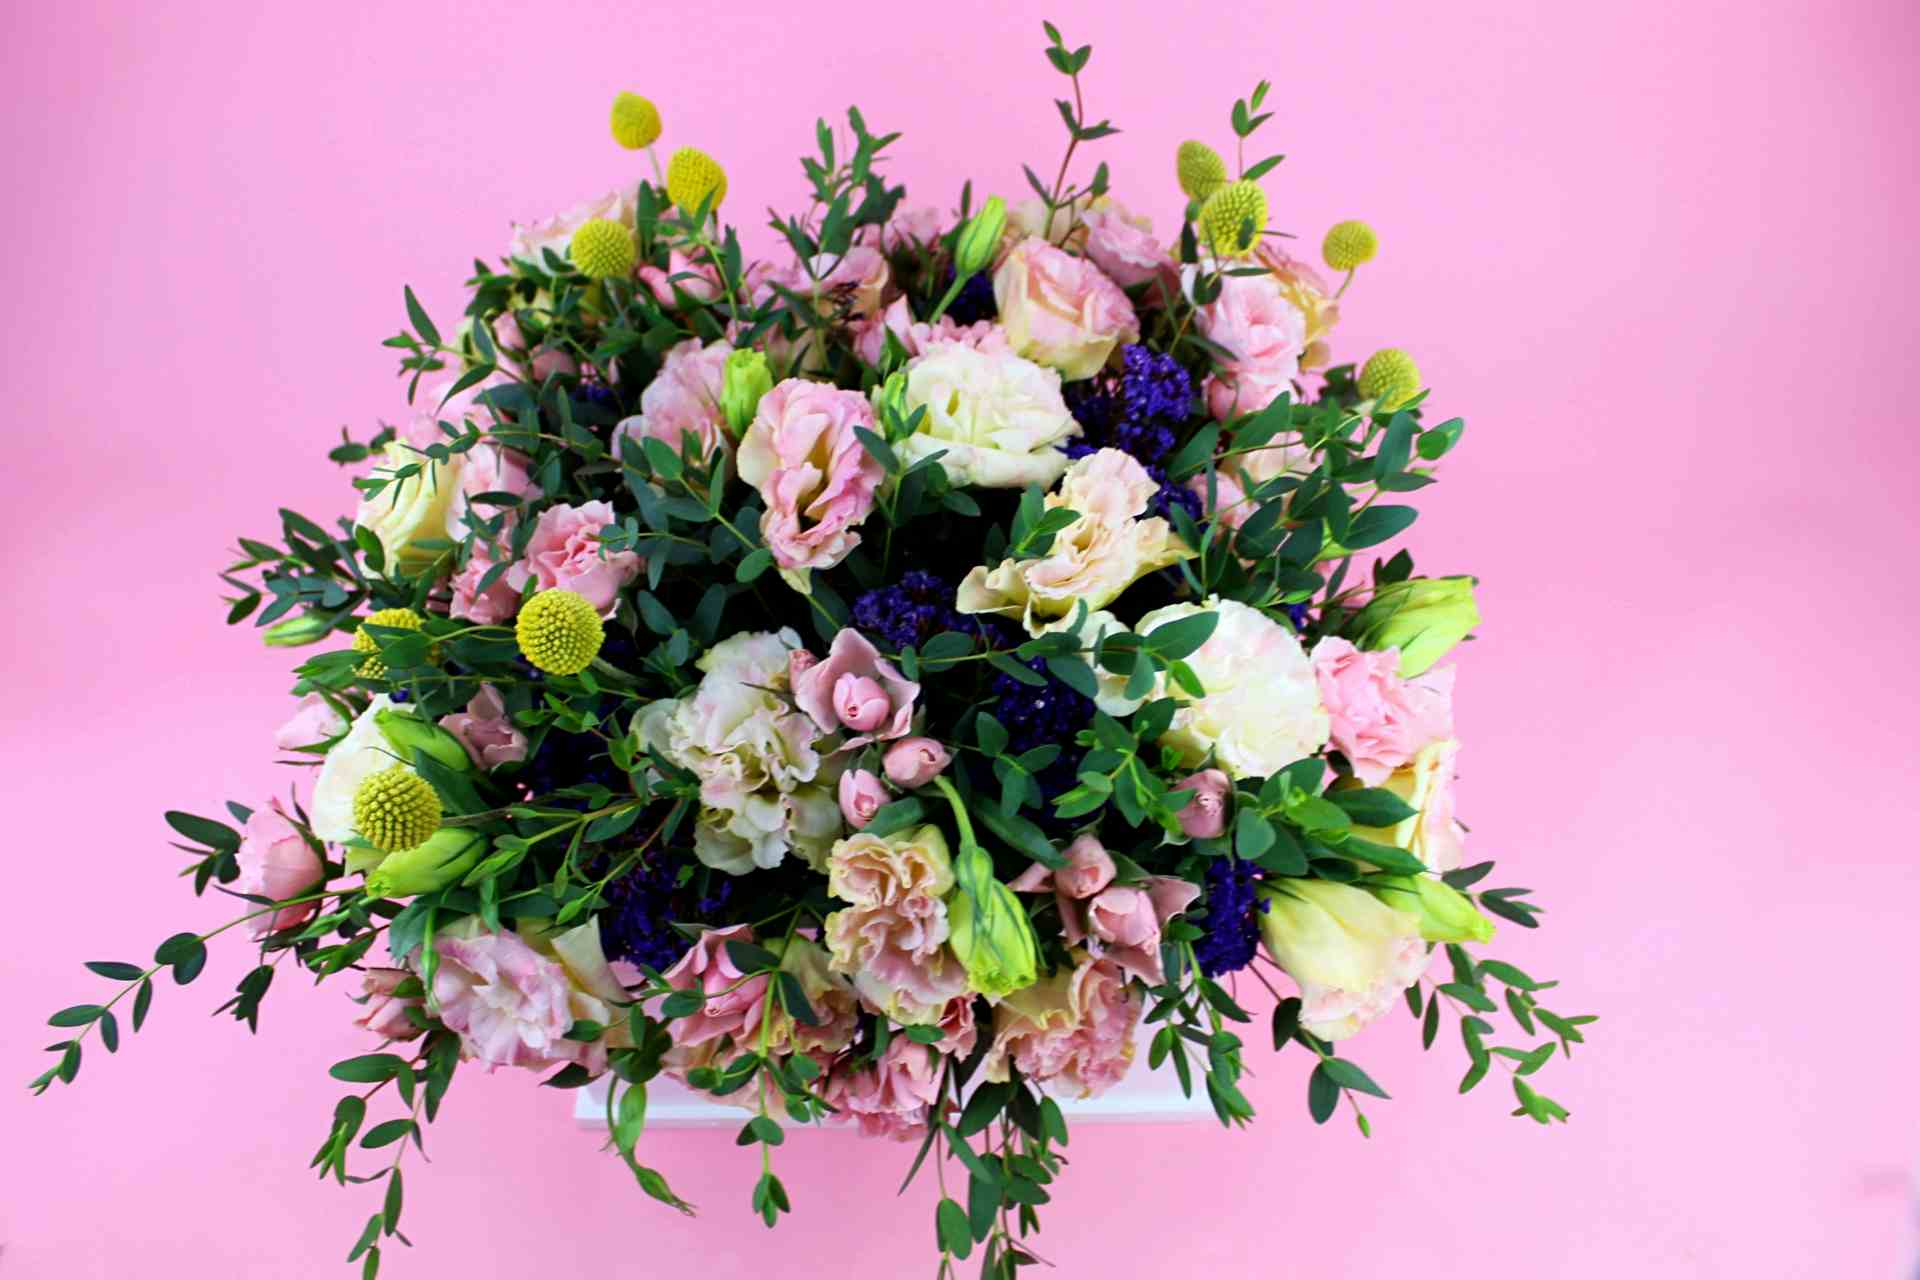 Adorno floral de lisianthus y mini rosas acompañado de follajes diversos